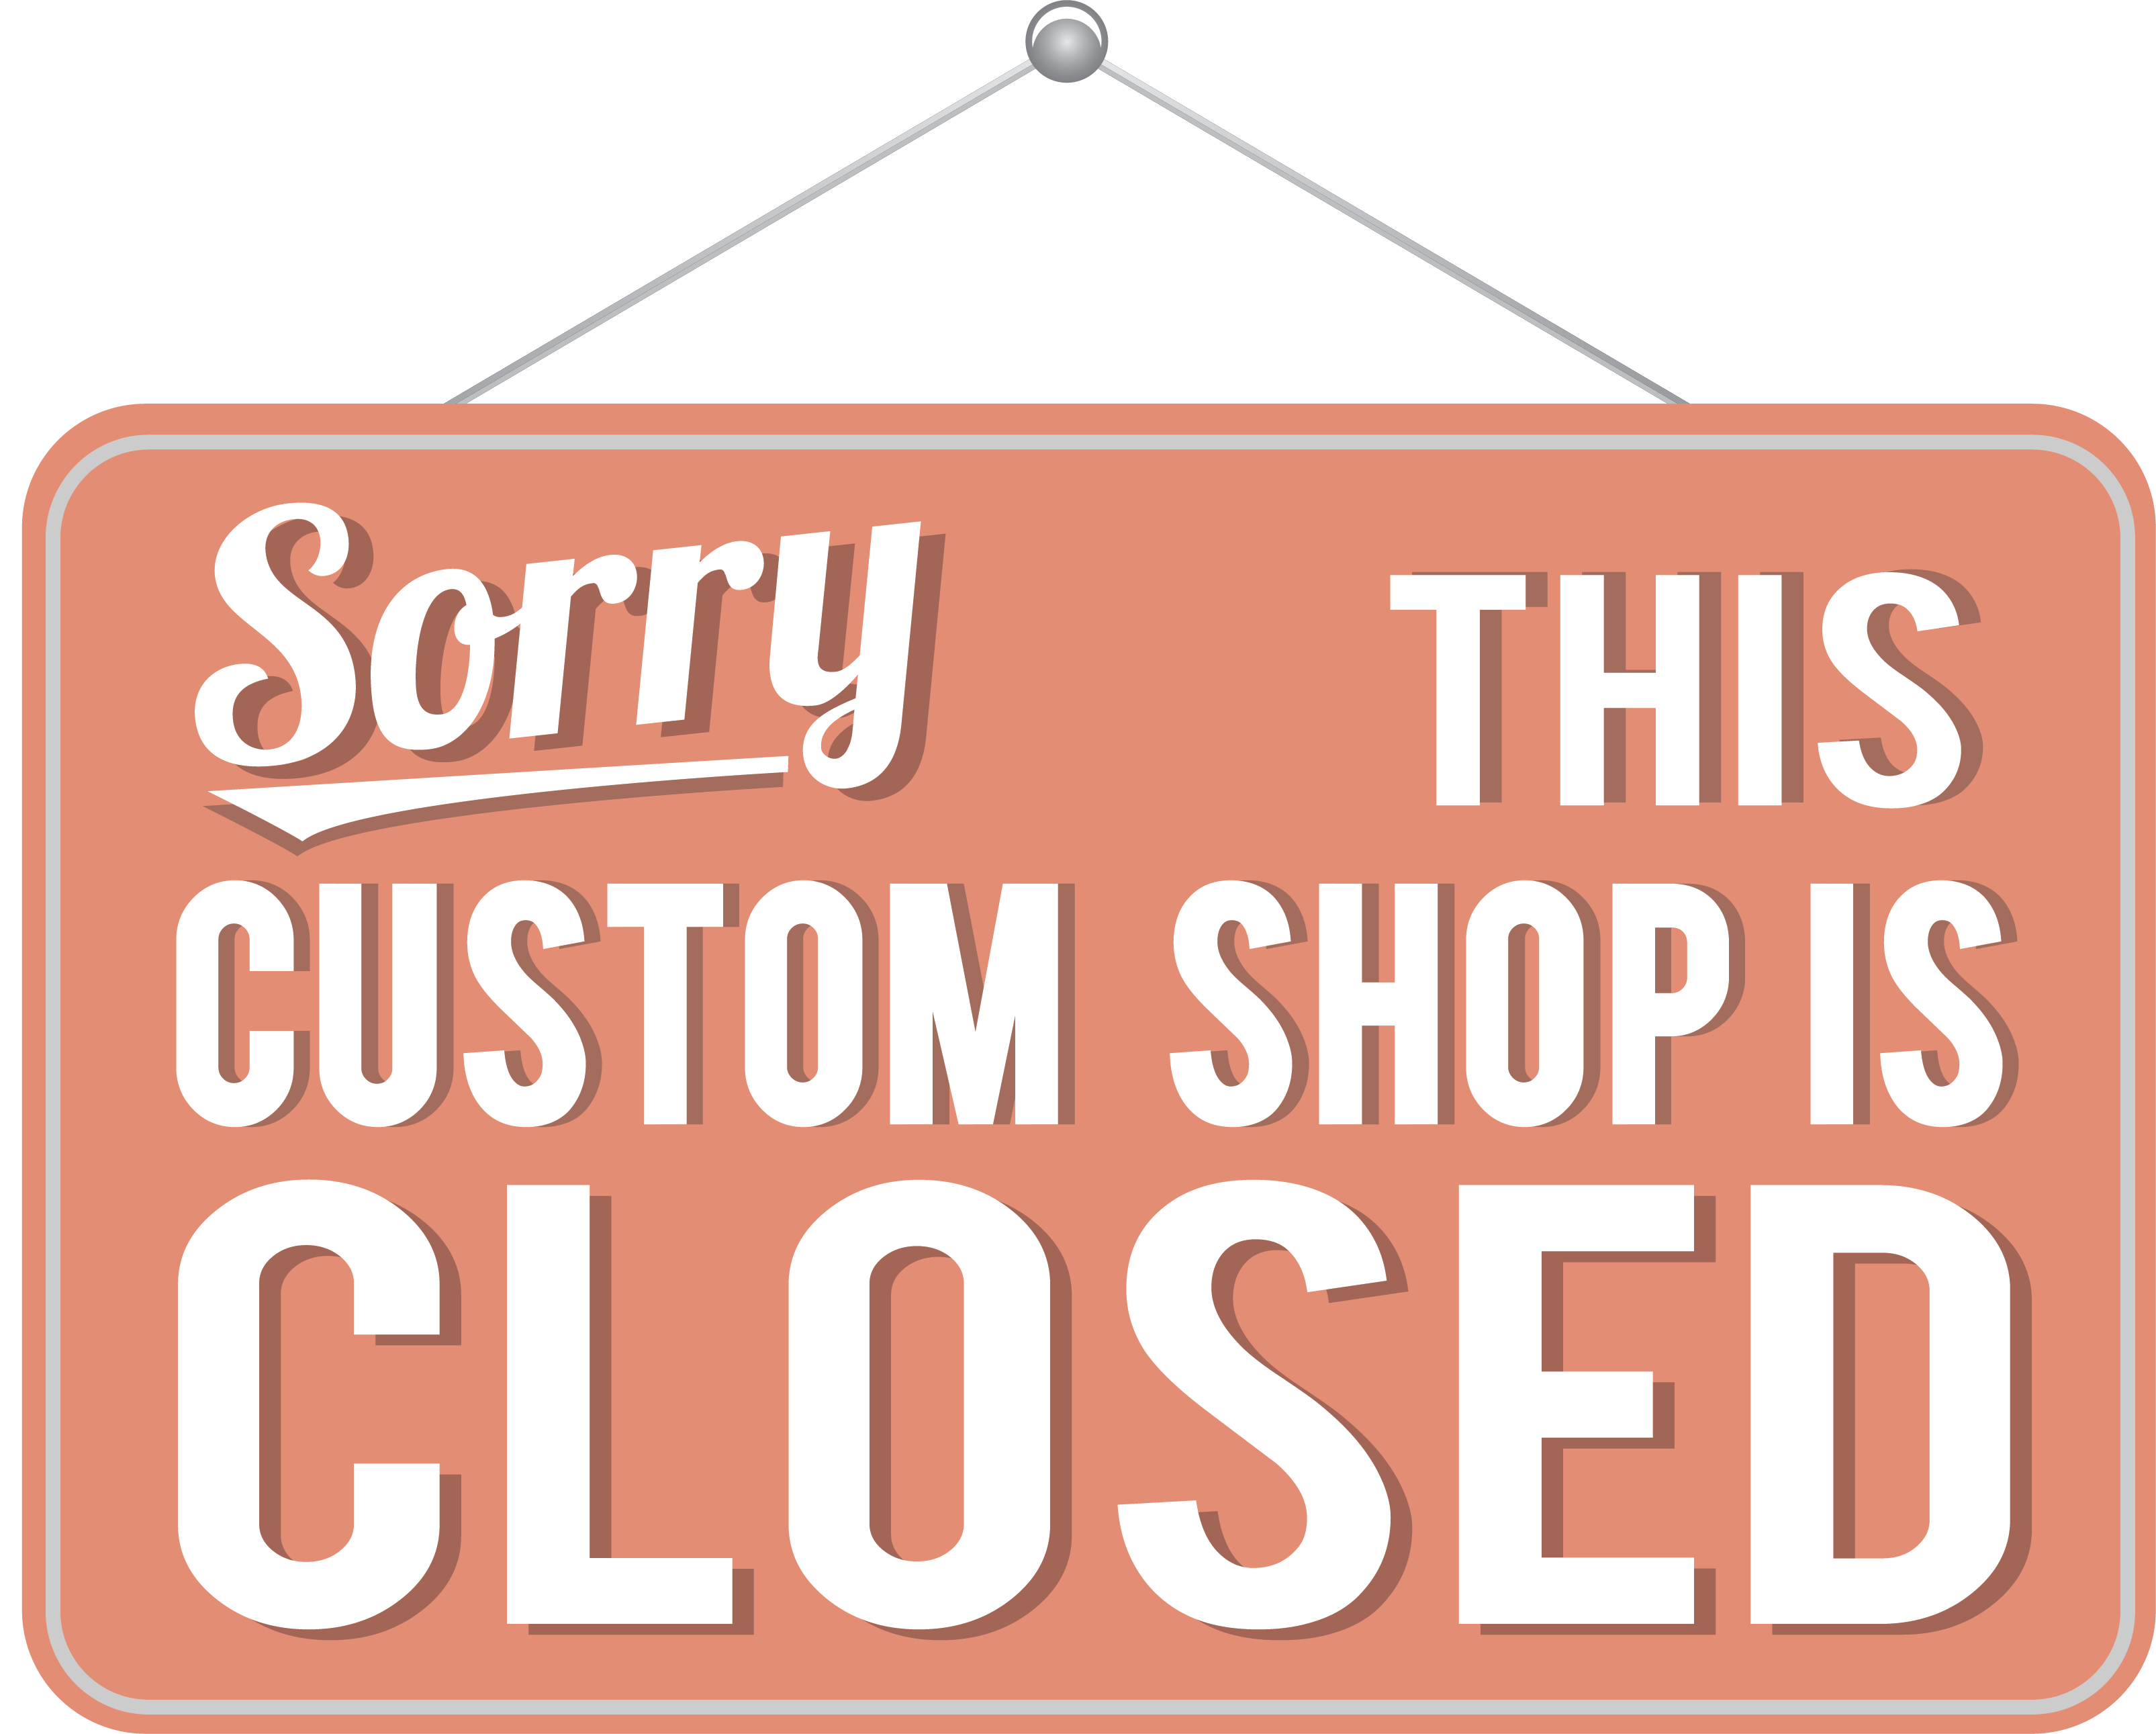 Custom Shop Closed